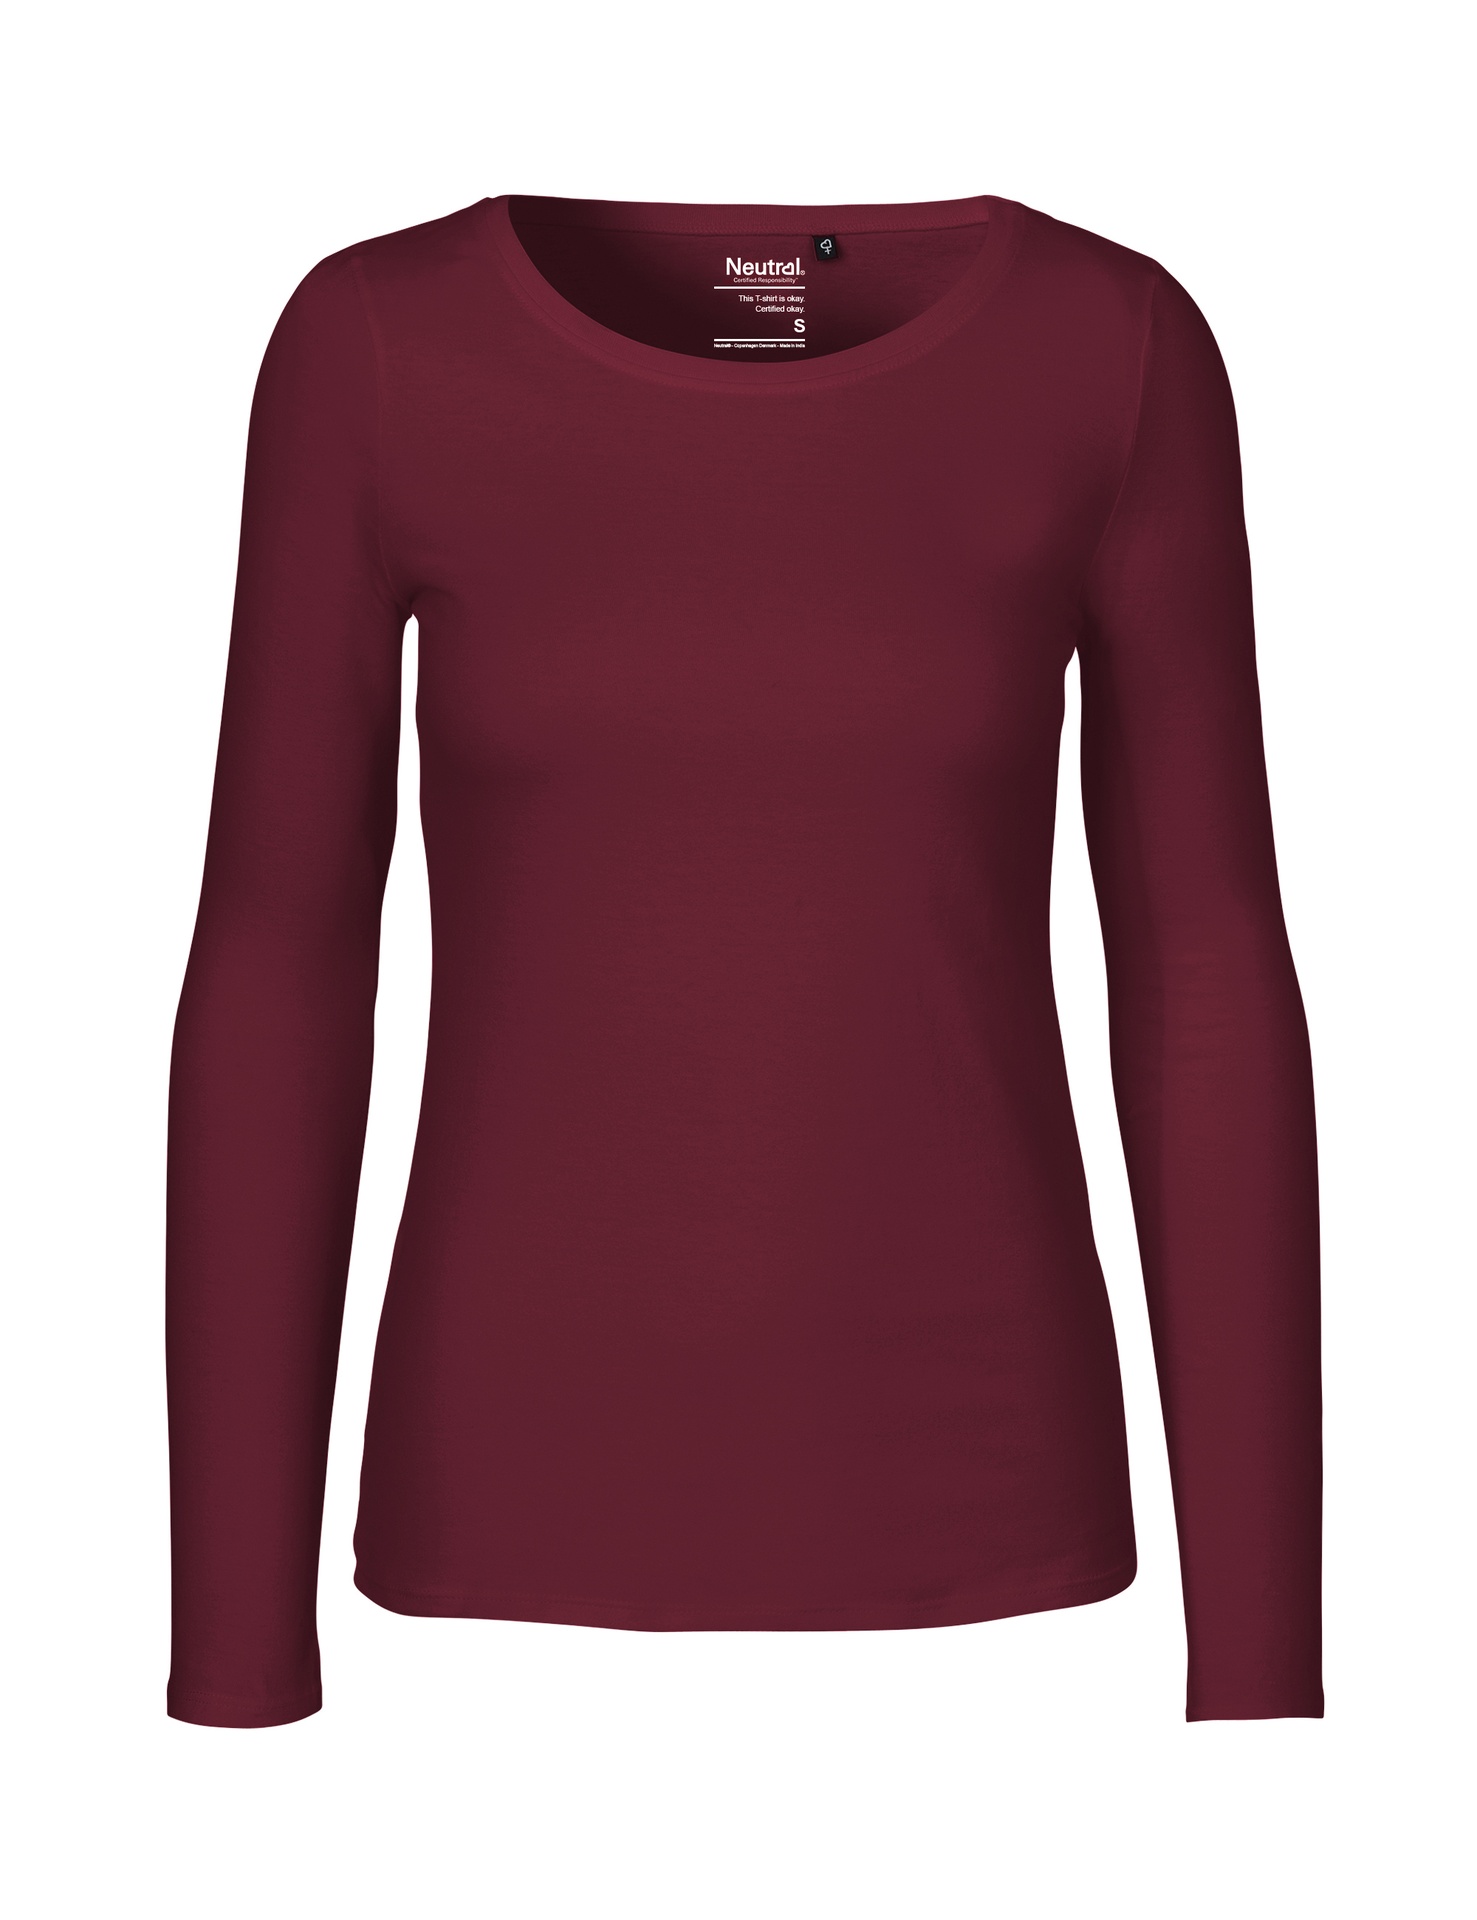 [PR/04710] Ladies Long Sleeve T-Shirt (Bordeaux 26, 2XL)